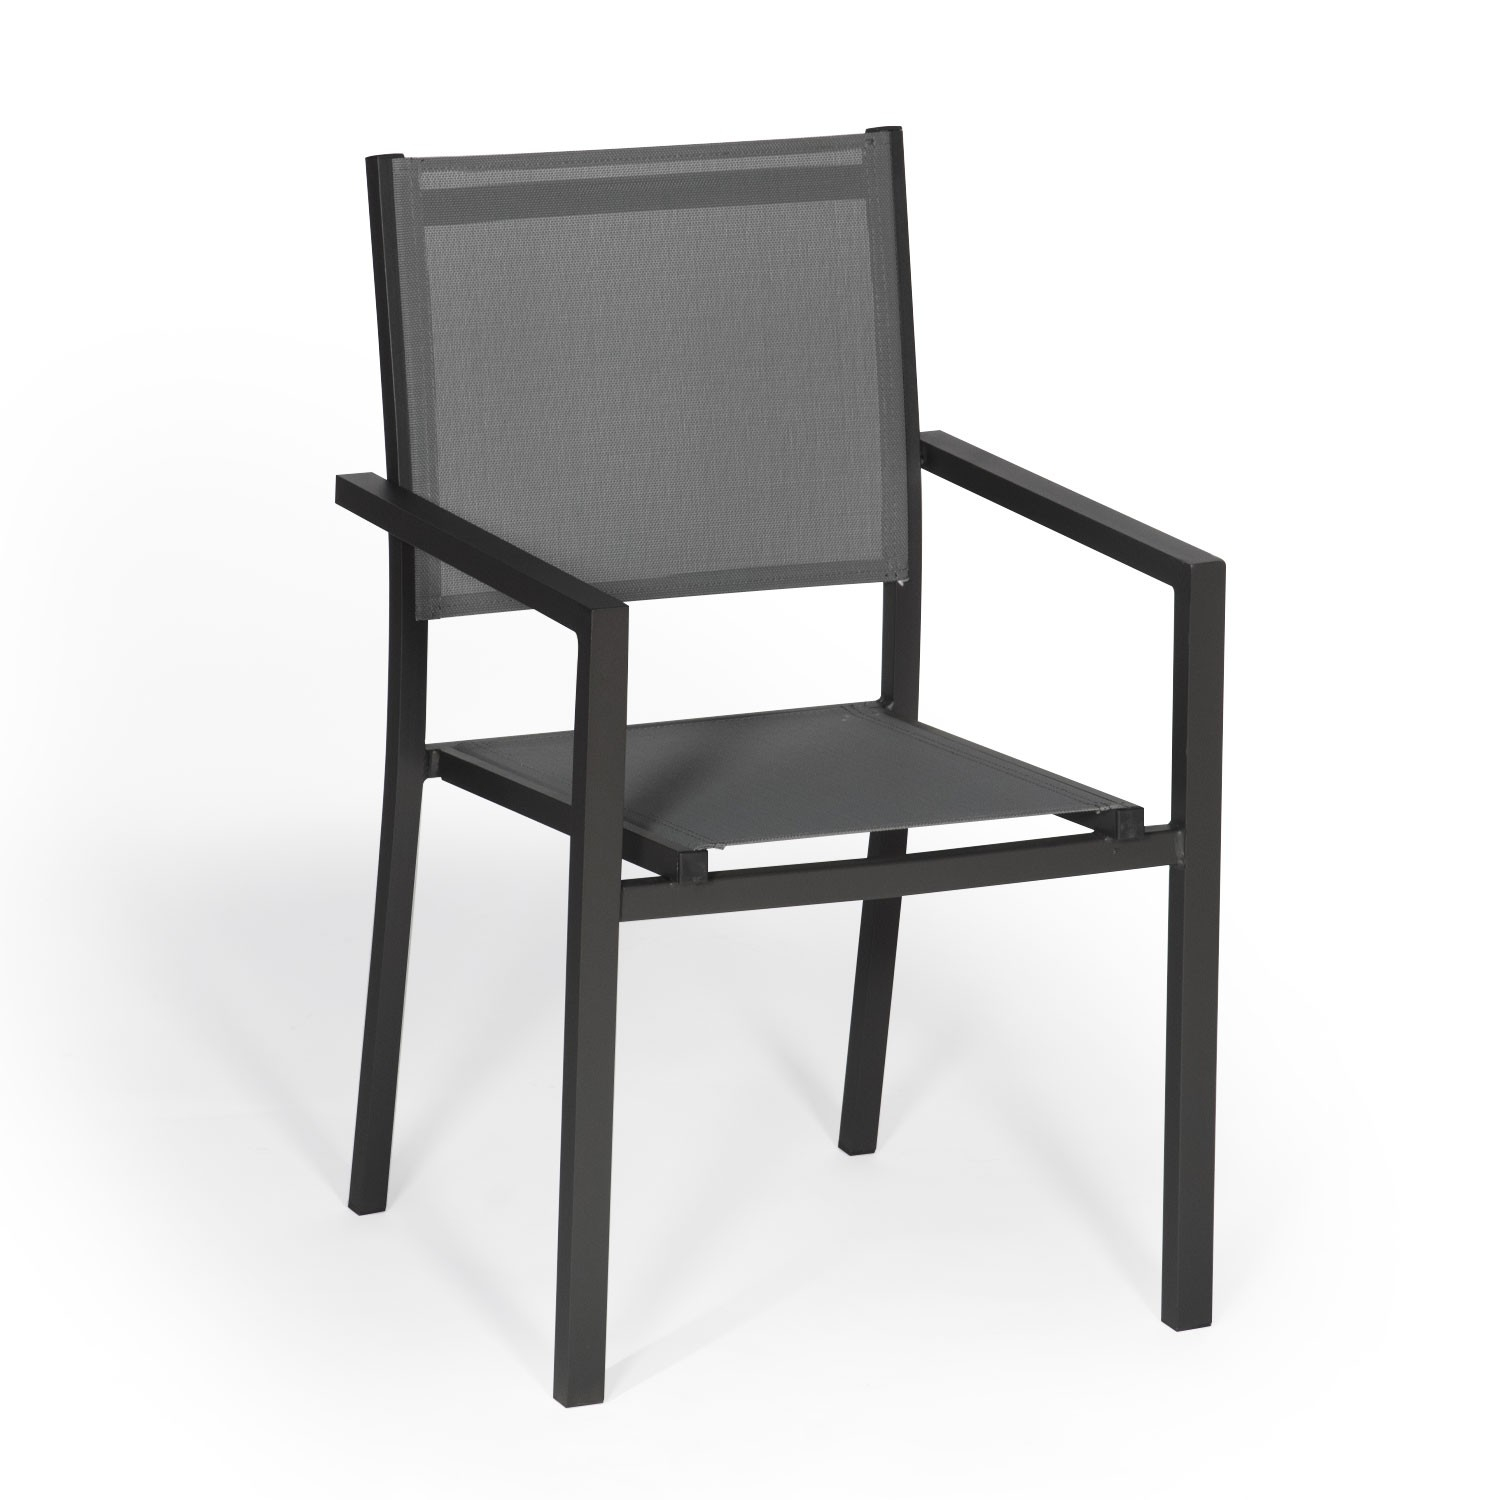 Lot de 6 chaises en aluminium anthracite - textilène gris